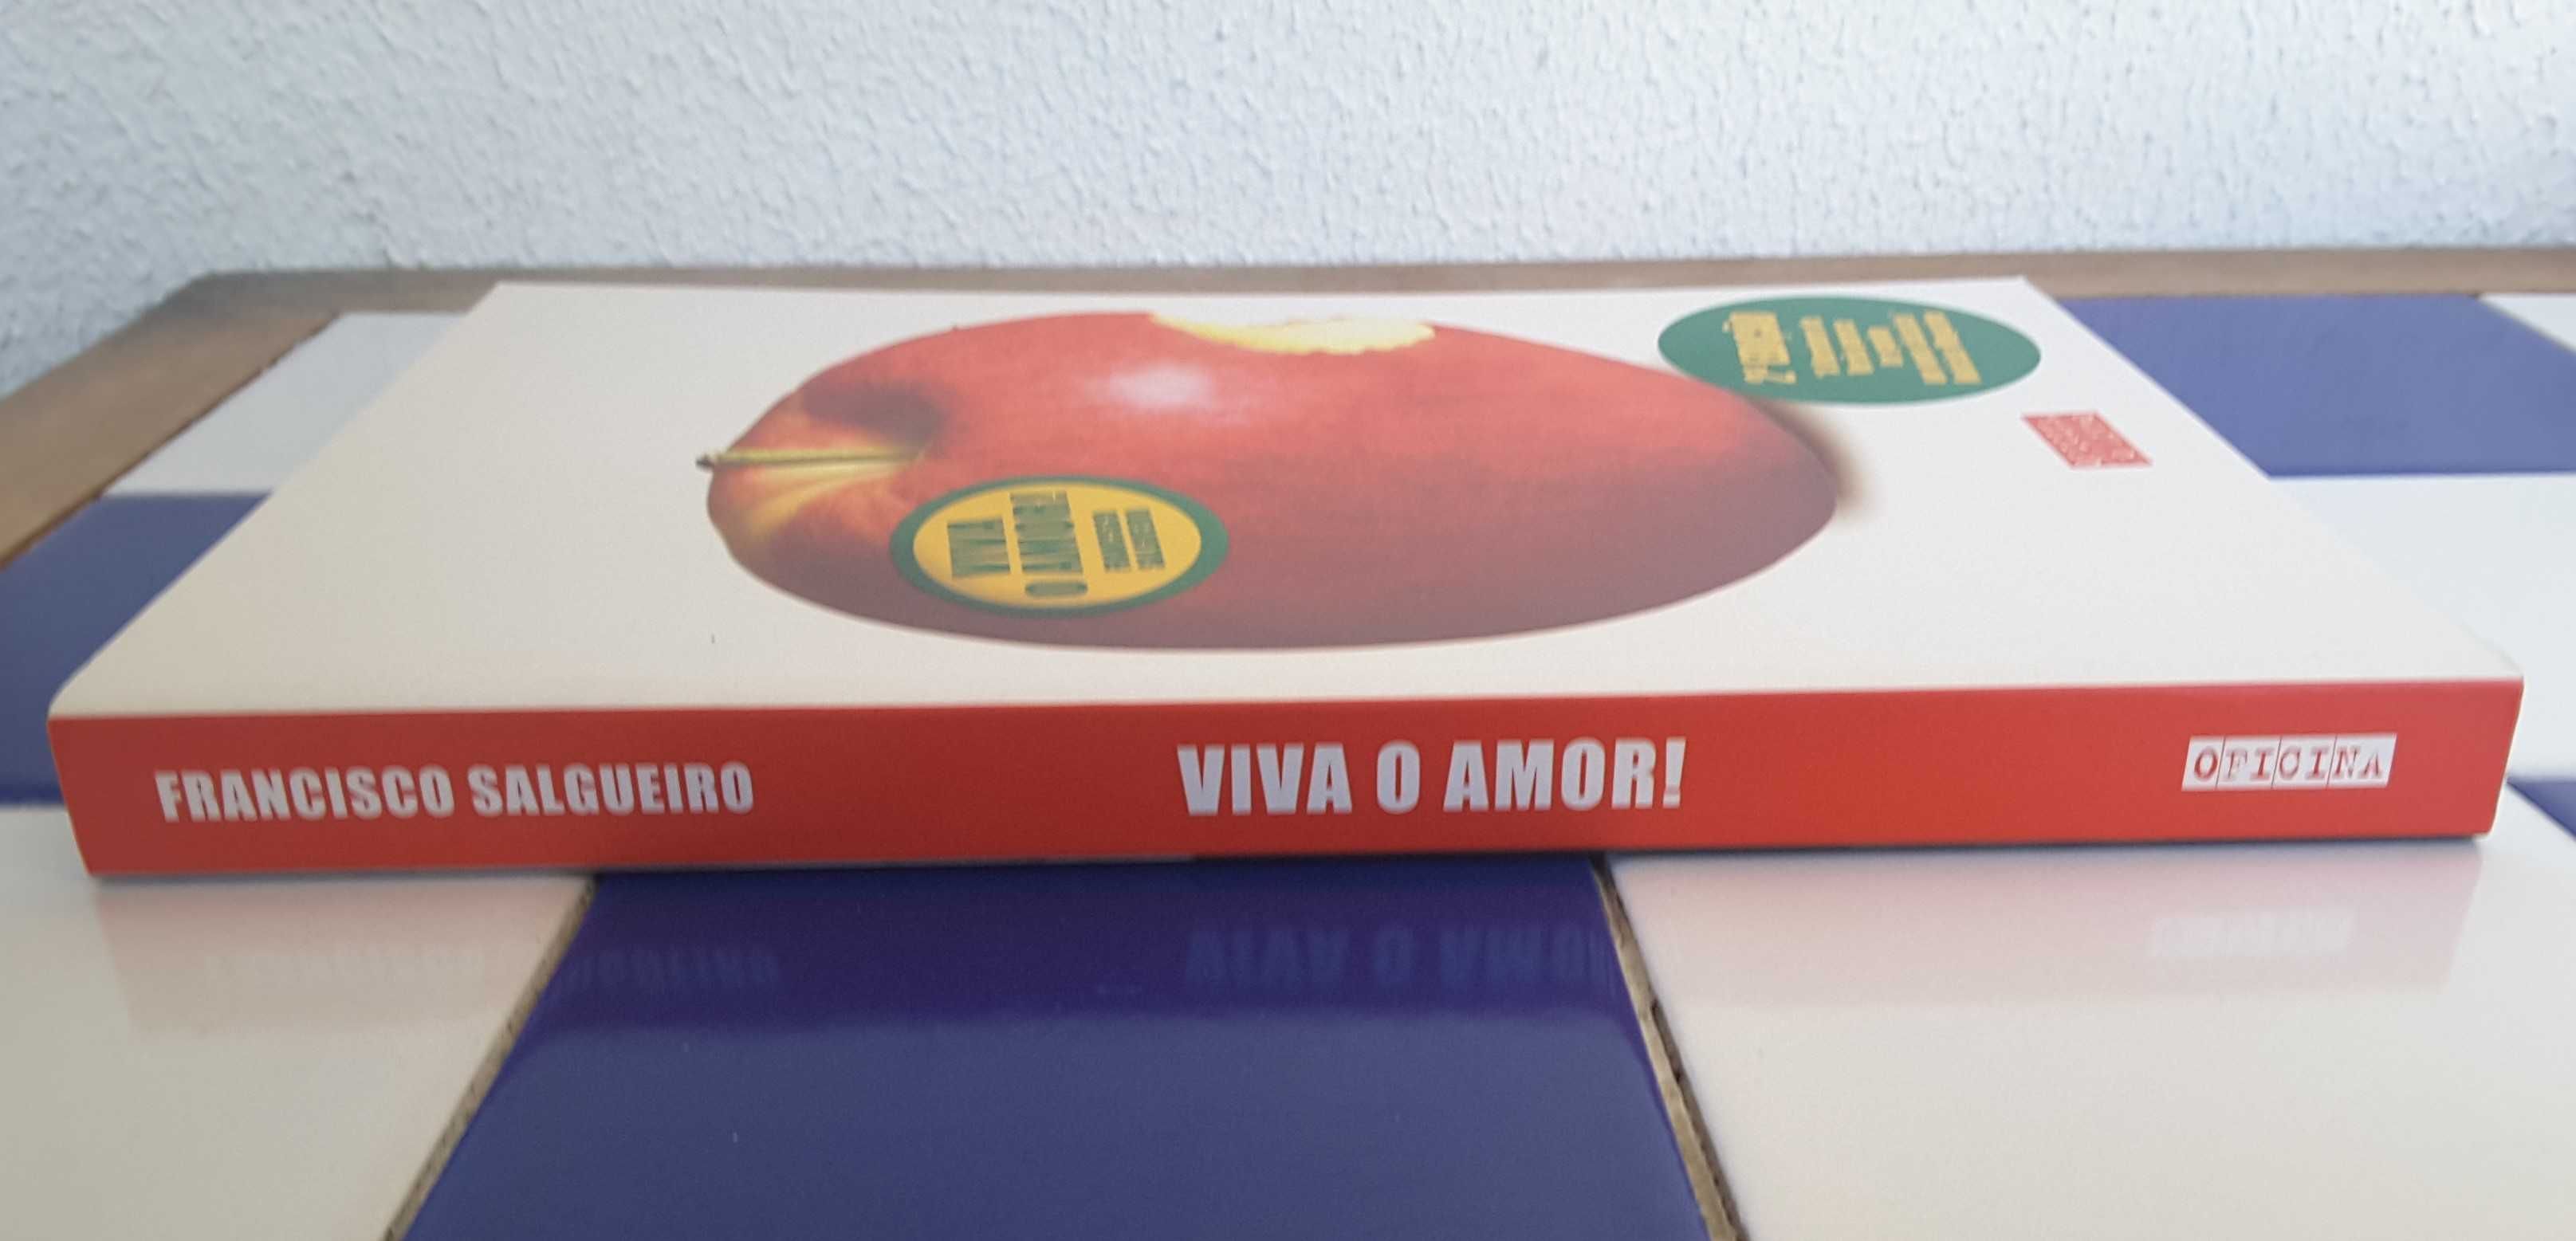 Livro "Viva o Amor!", de Francisco Salgueiro (Como NOVO!)